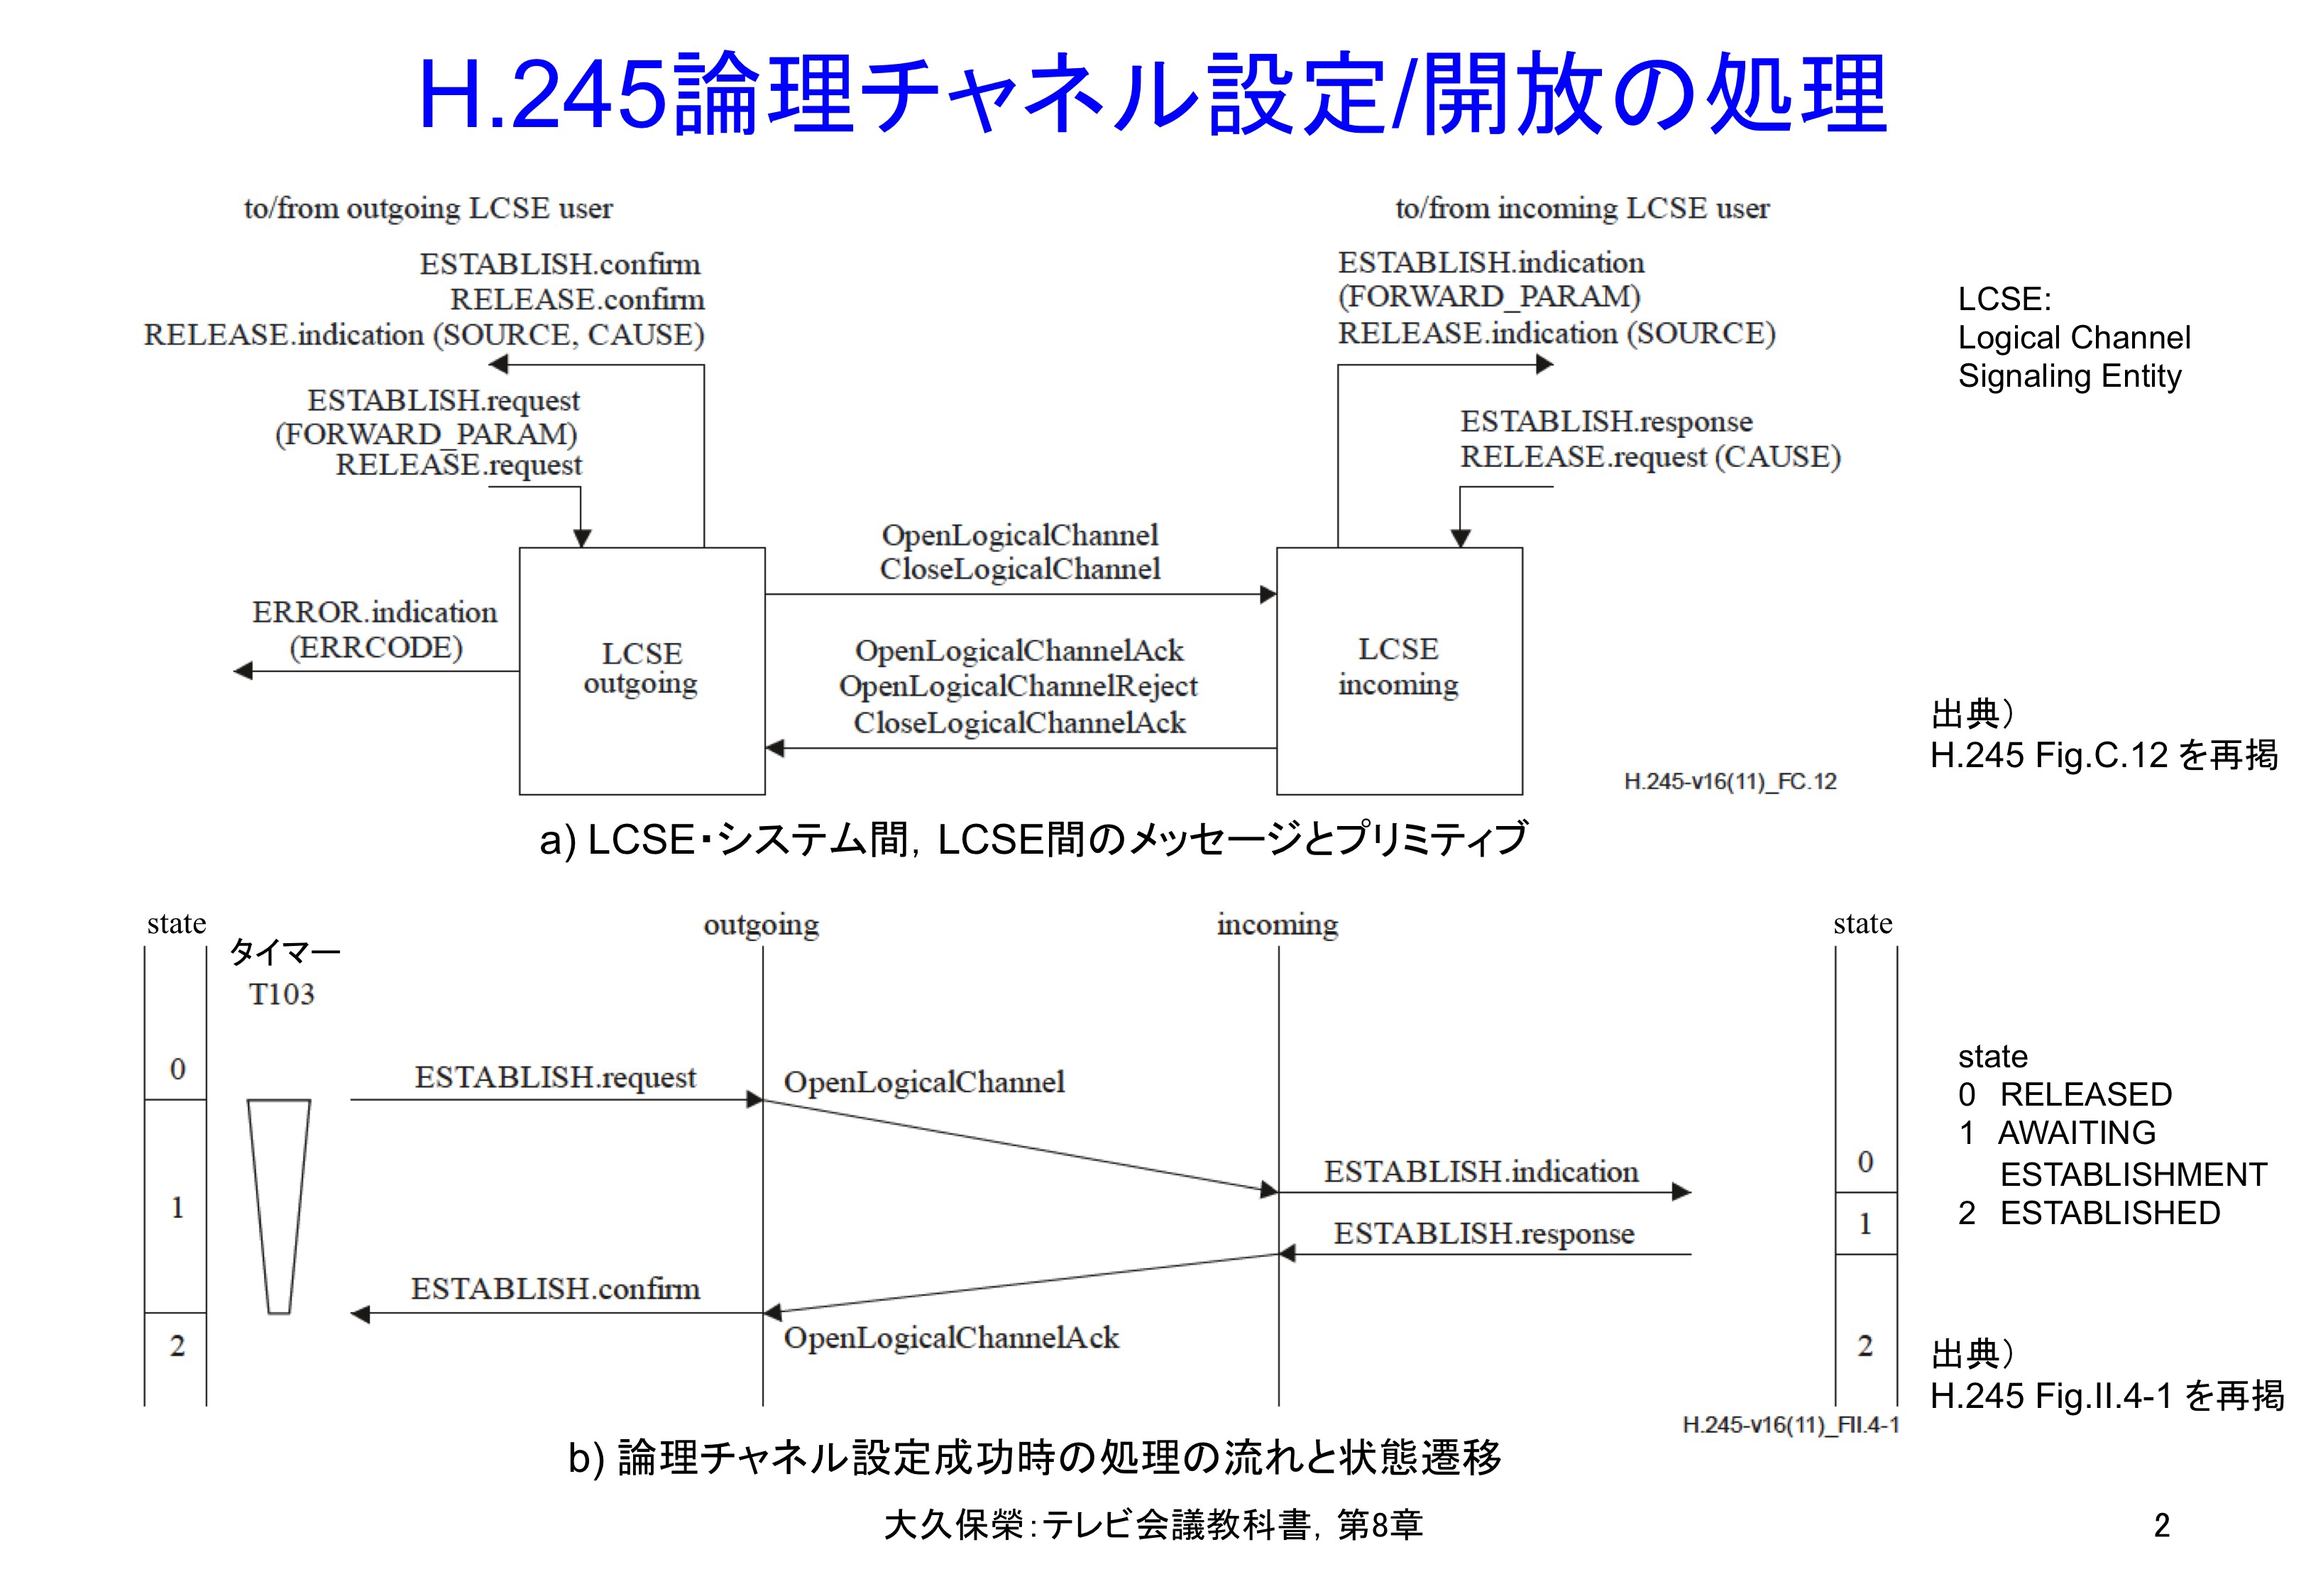 図8-2 H.245論理チャネル設定/開放の処理